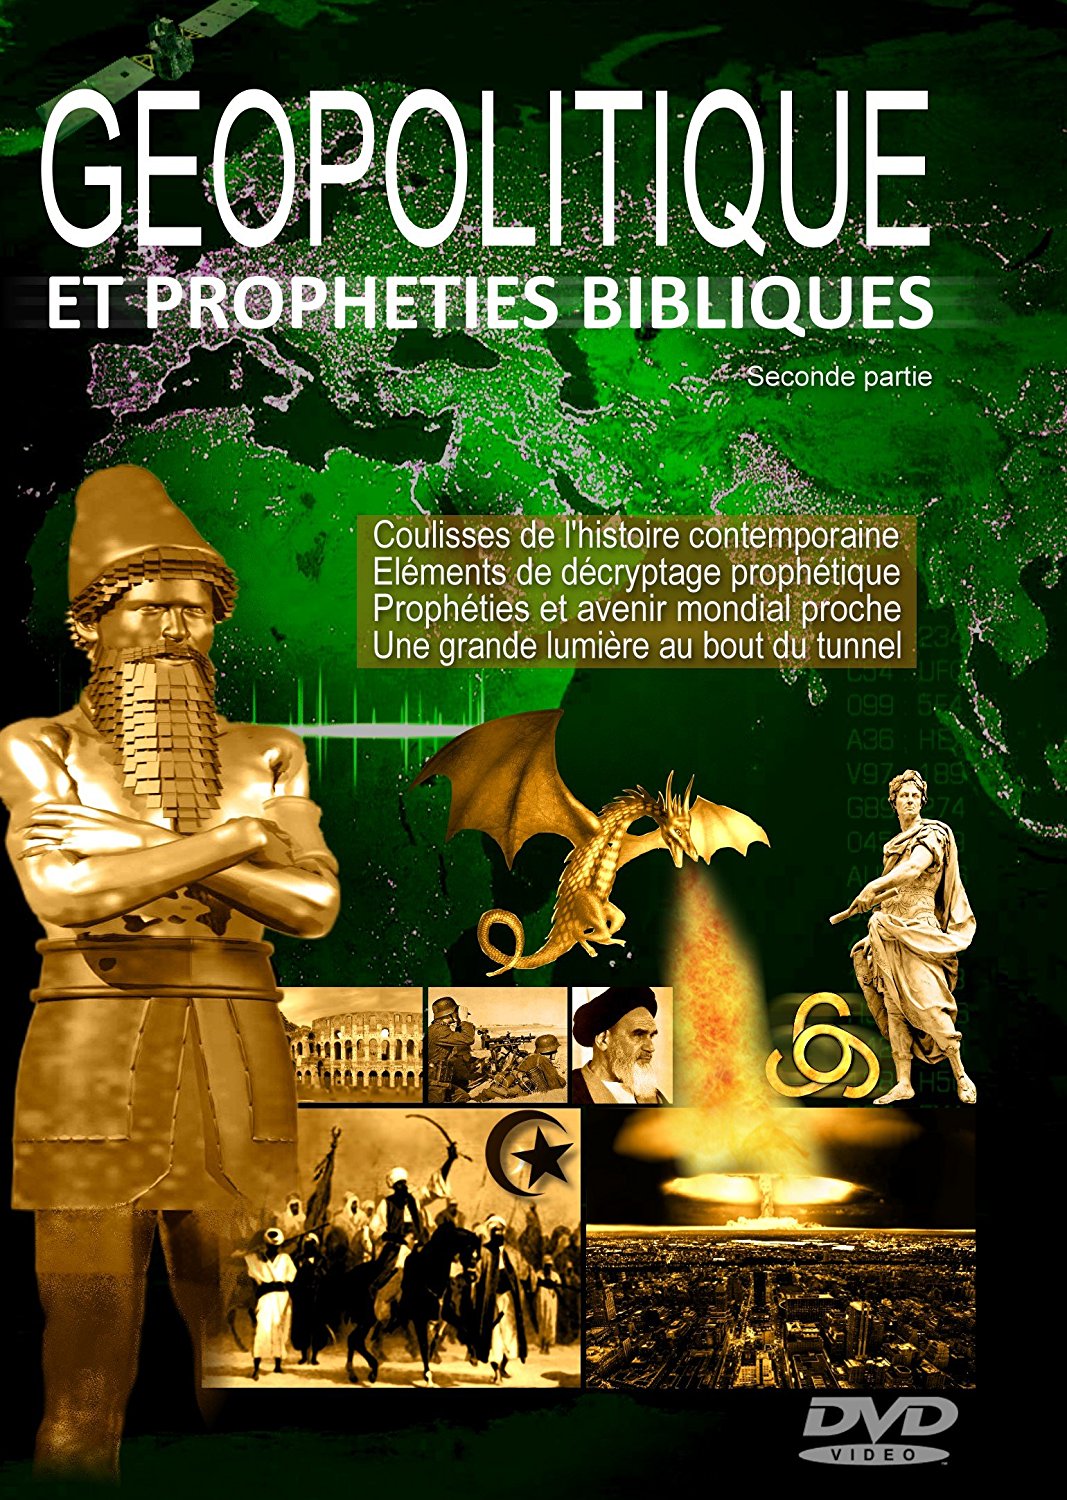 Géopolitique et prophéties bibliques - Vol. 2 DVD